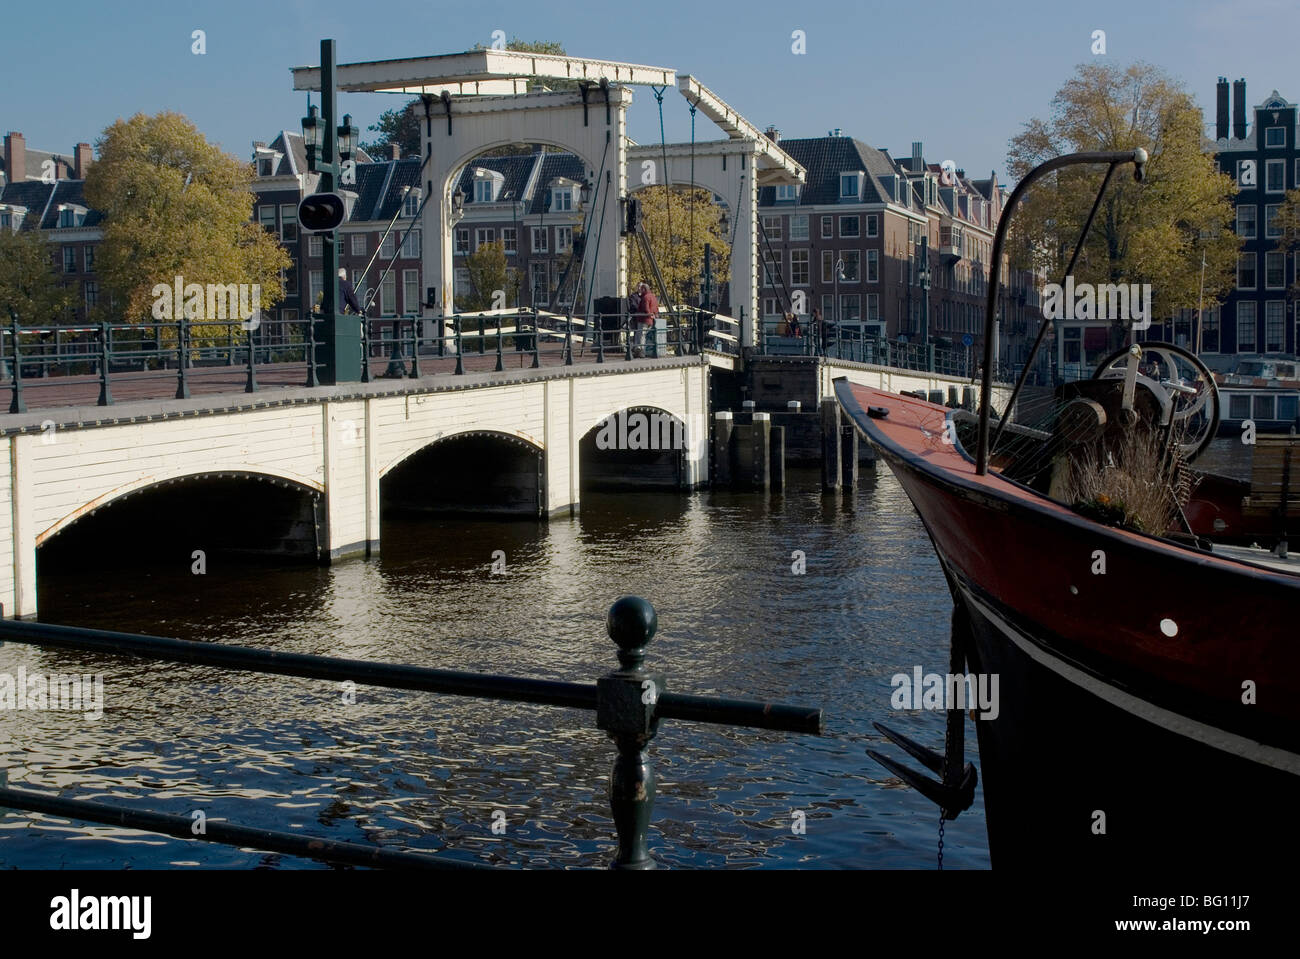 Skinny Pont sur la rivière Amstel, Amsterdam, Pays-Bas, Europe Banque D'Images